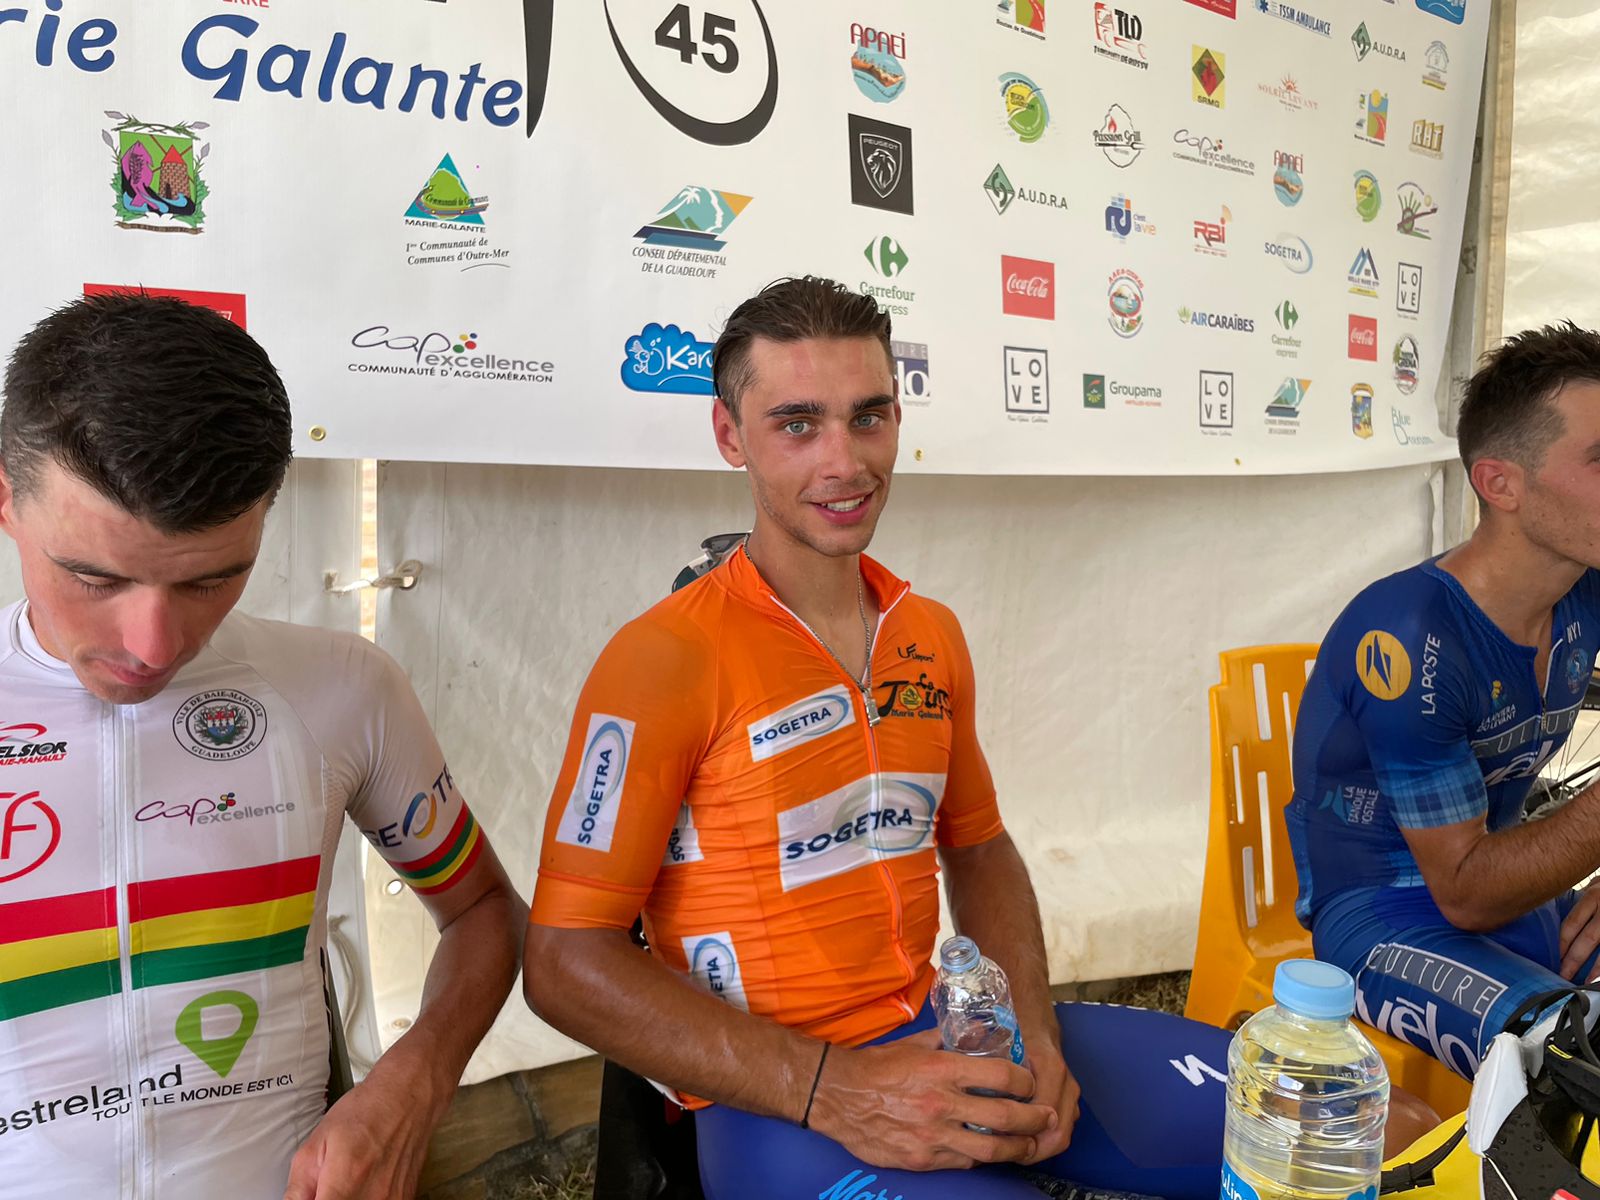     Dylan Durand, vainqueur de la 2ème étape du Tour de Marie-Galante

